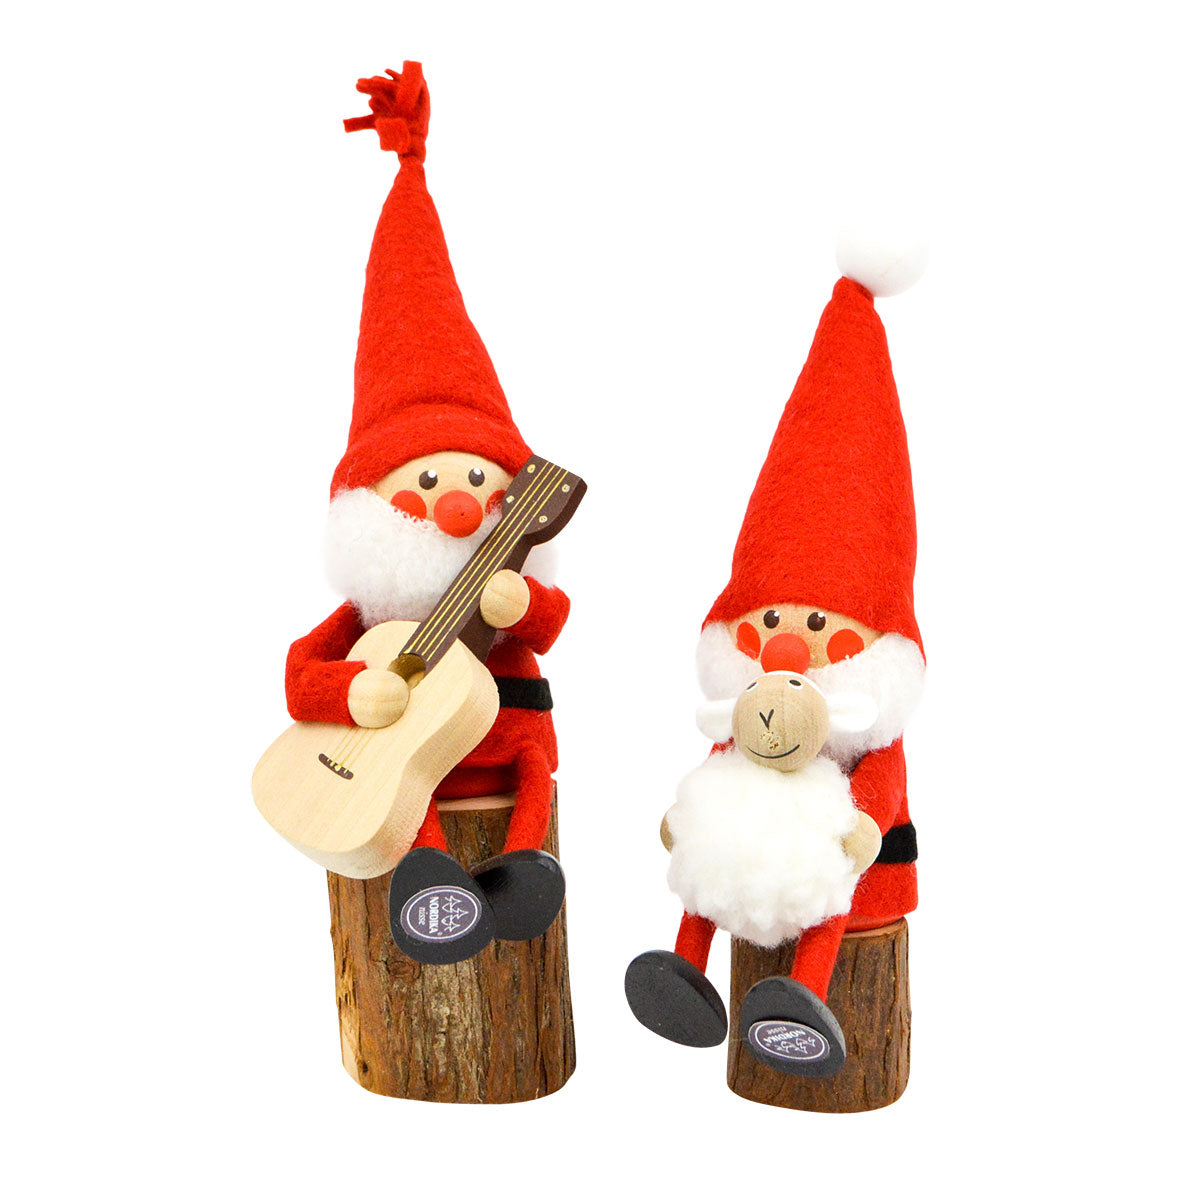 NORDIKA nisse ノルディカ ニッセ クリスマス 木製人形 ( お座り人形用 